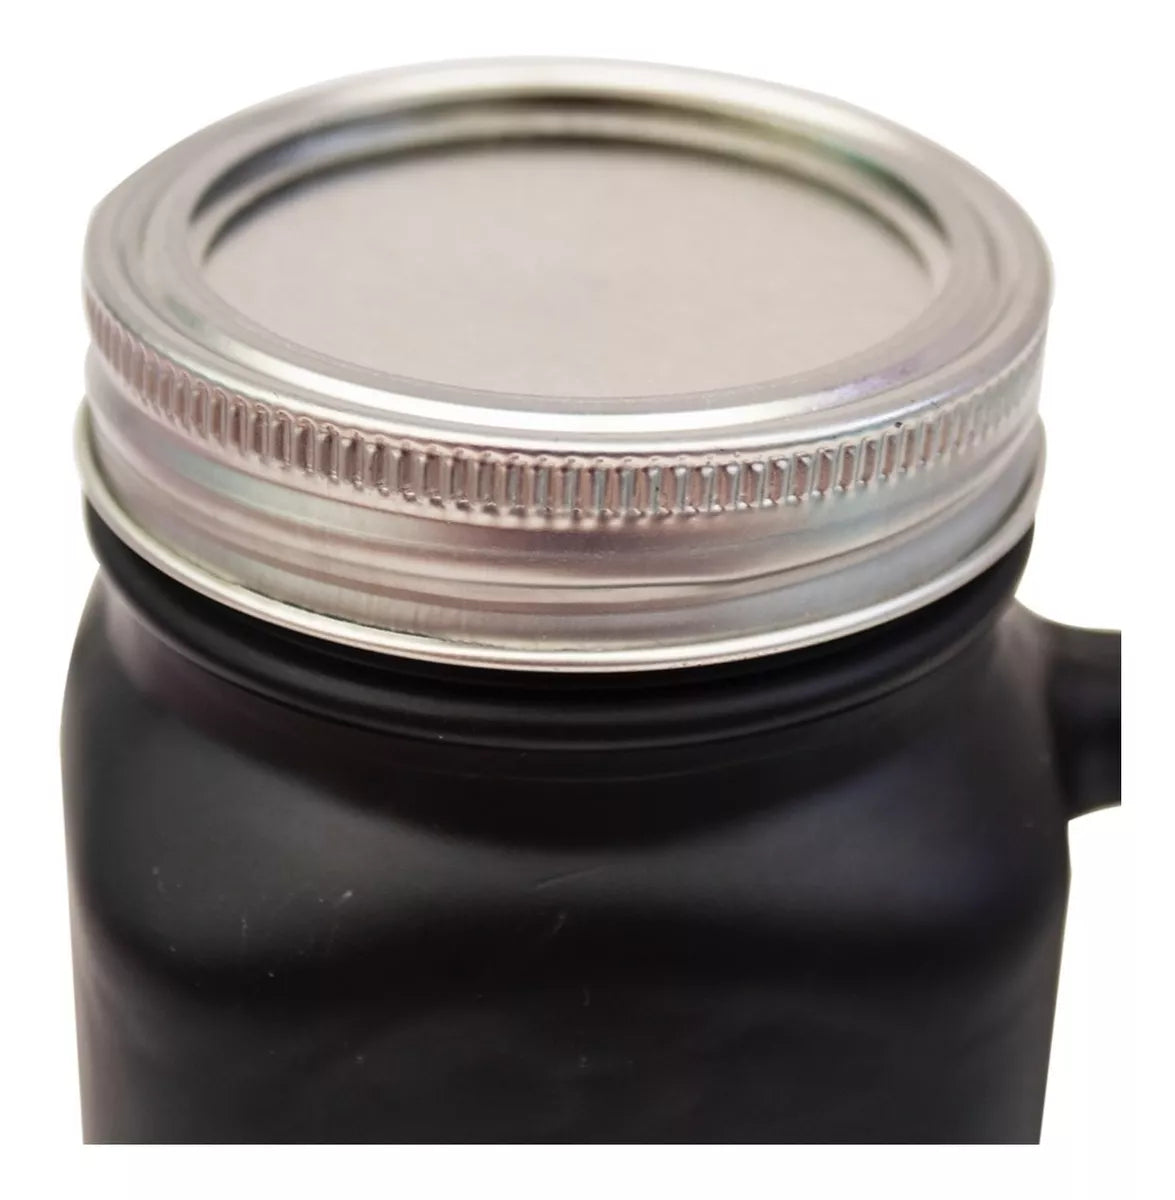 6 Pack Mason Jar Personalizar Con Gis Tarros Envas Pizarra